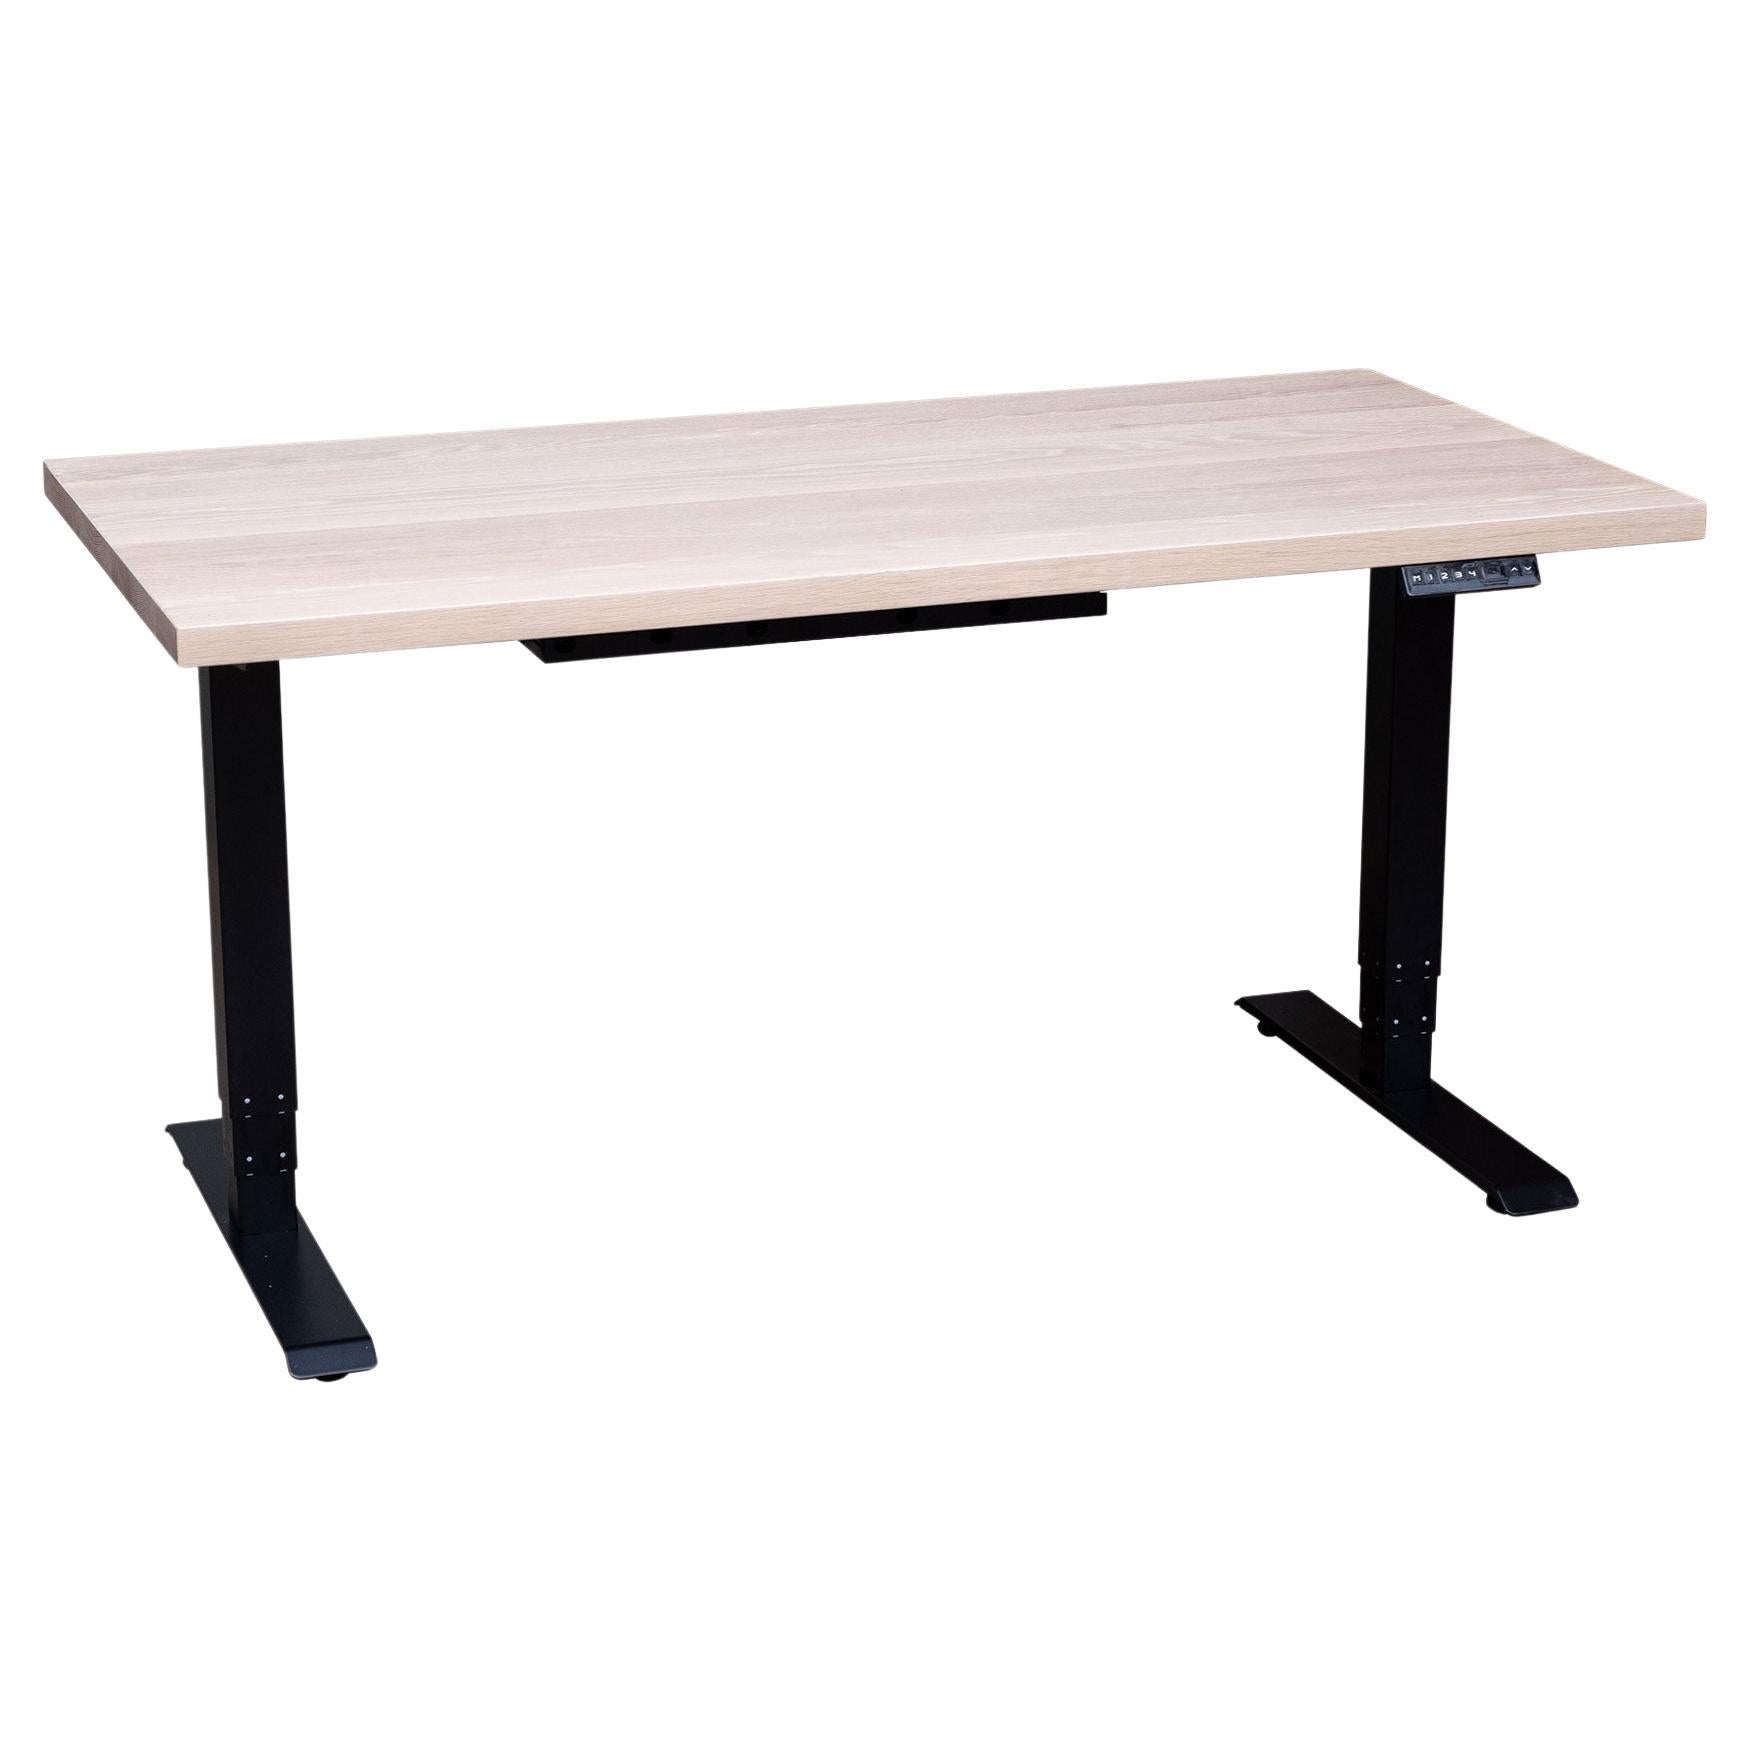 Siège/bureau sur mesure « essentials Desk » avec plateau en bois massif et base en métal, moyen